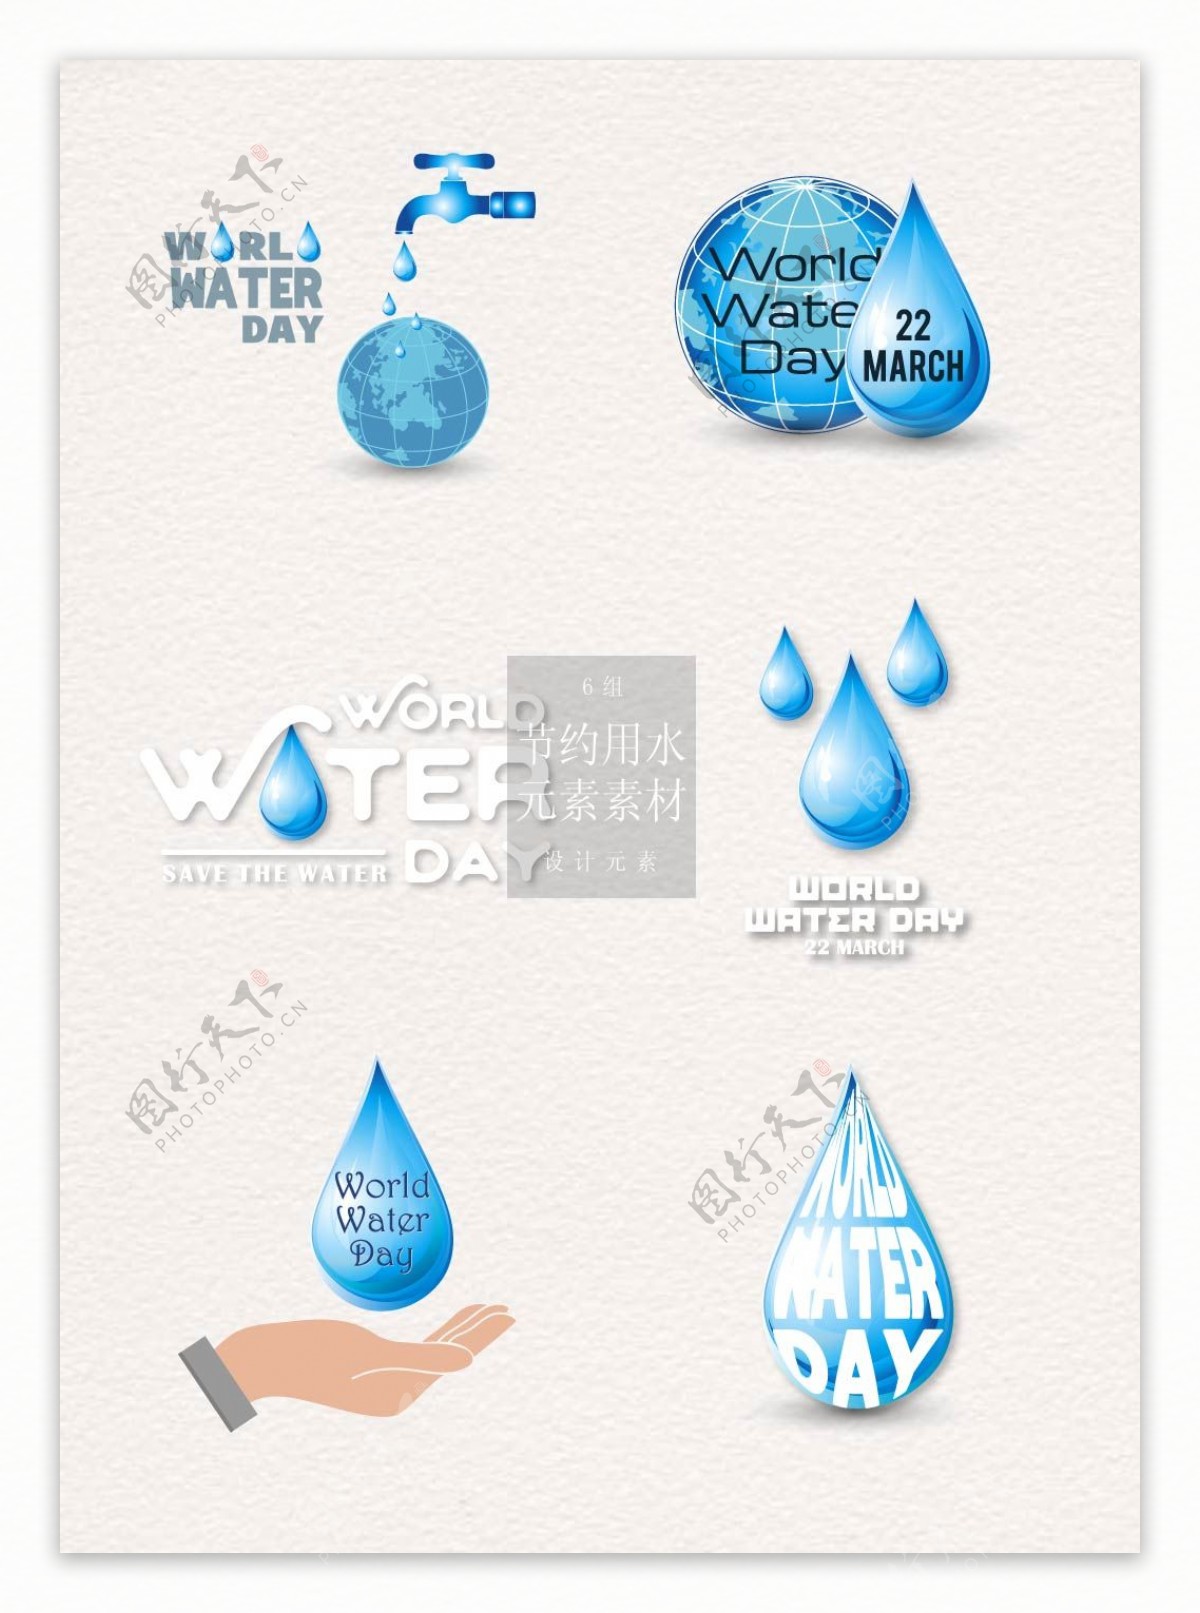 节约用水的标识设计素材